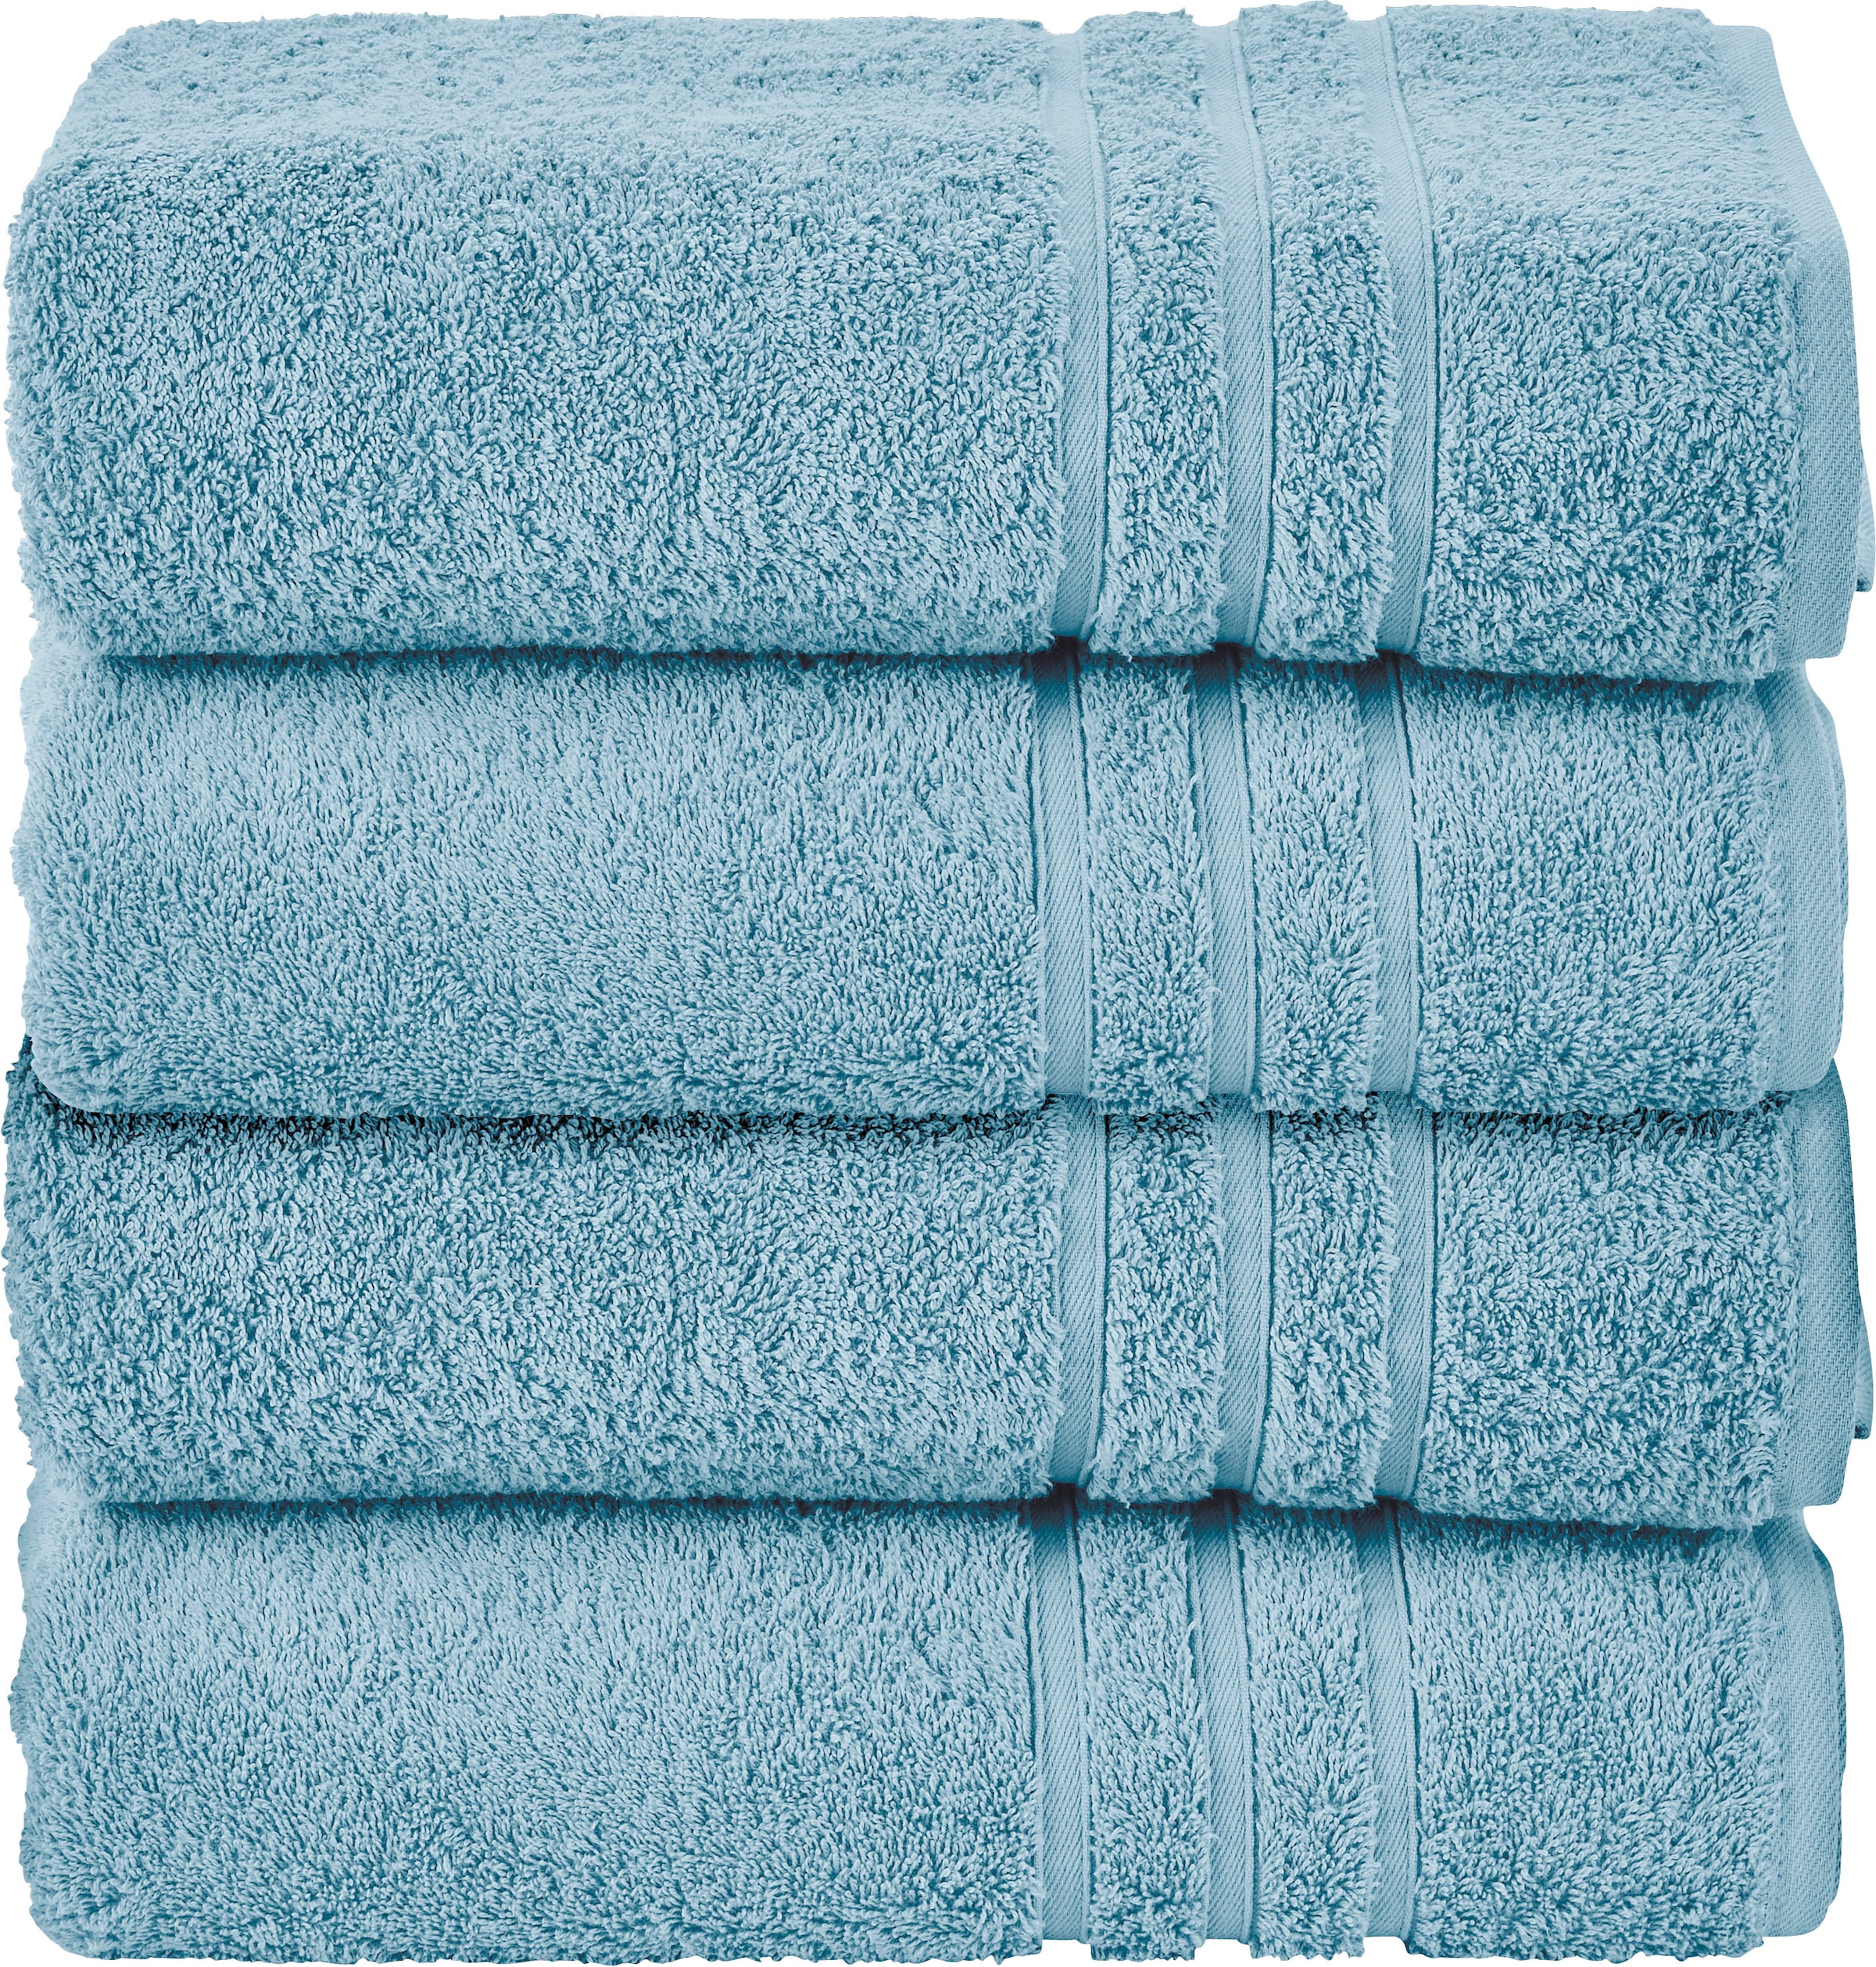 Handtuch-Sets online kaufen bei Quelle – Wir liefern | Handtuch-Sets